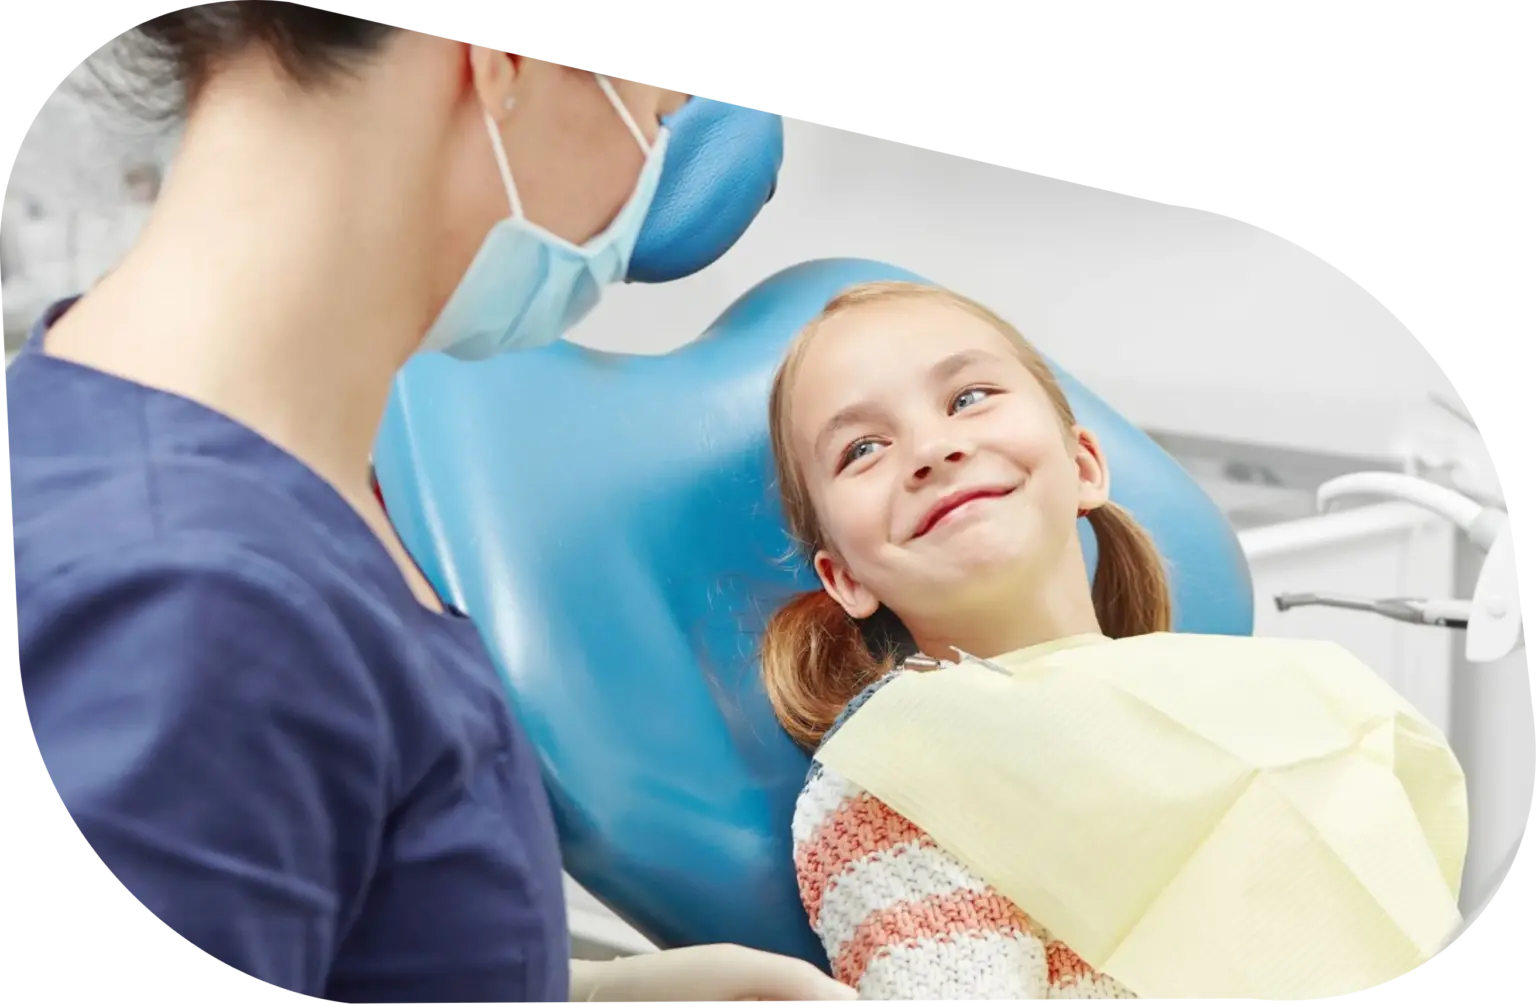 Estrazione dentale - Quando diventa necessario procedere con un estrazione dentale